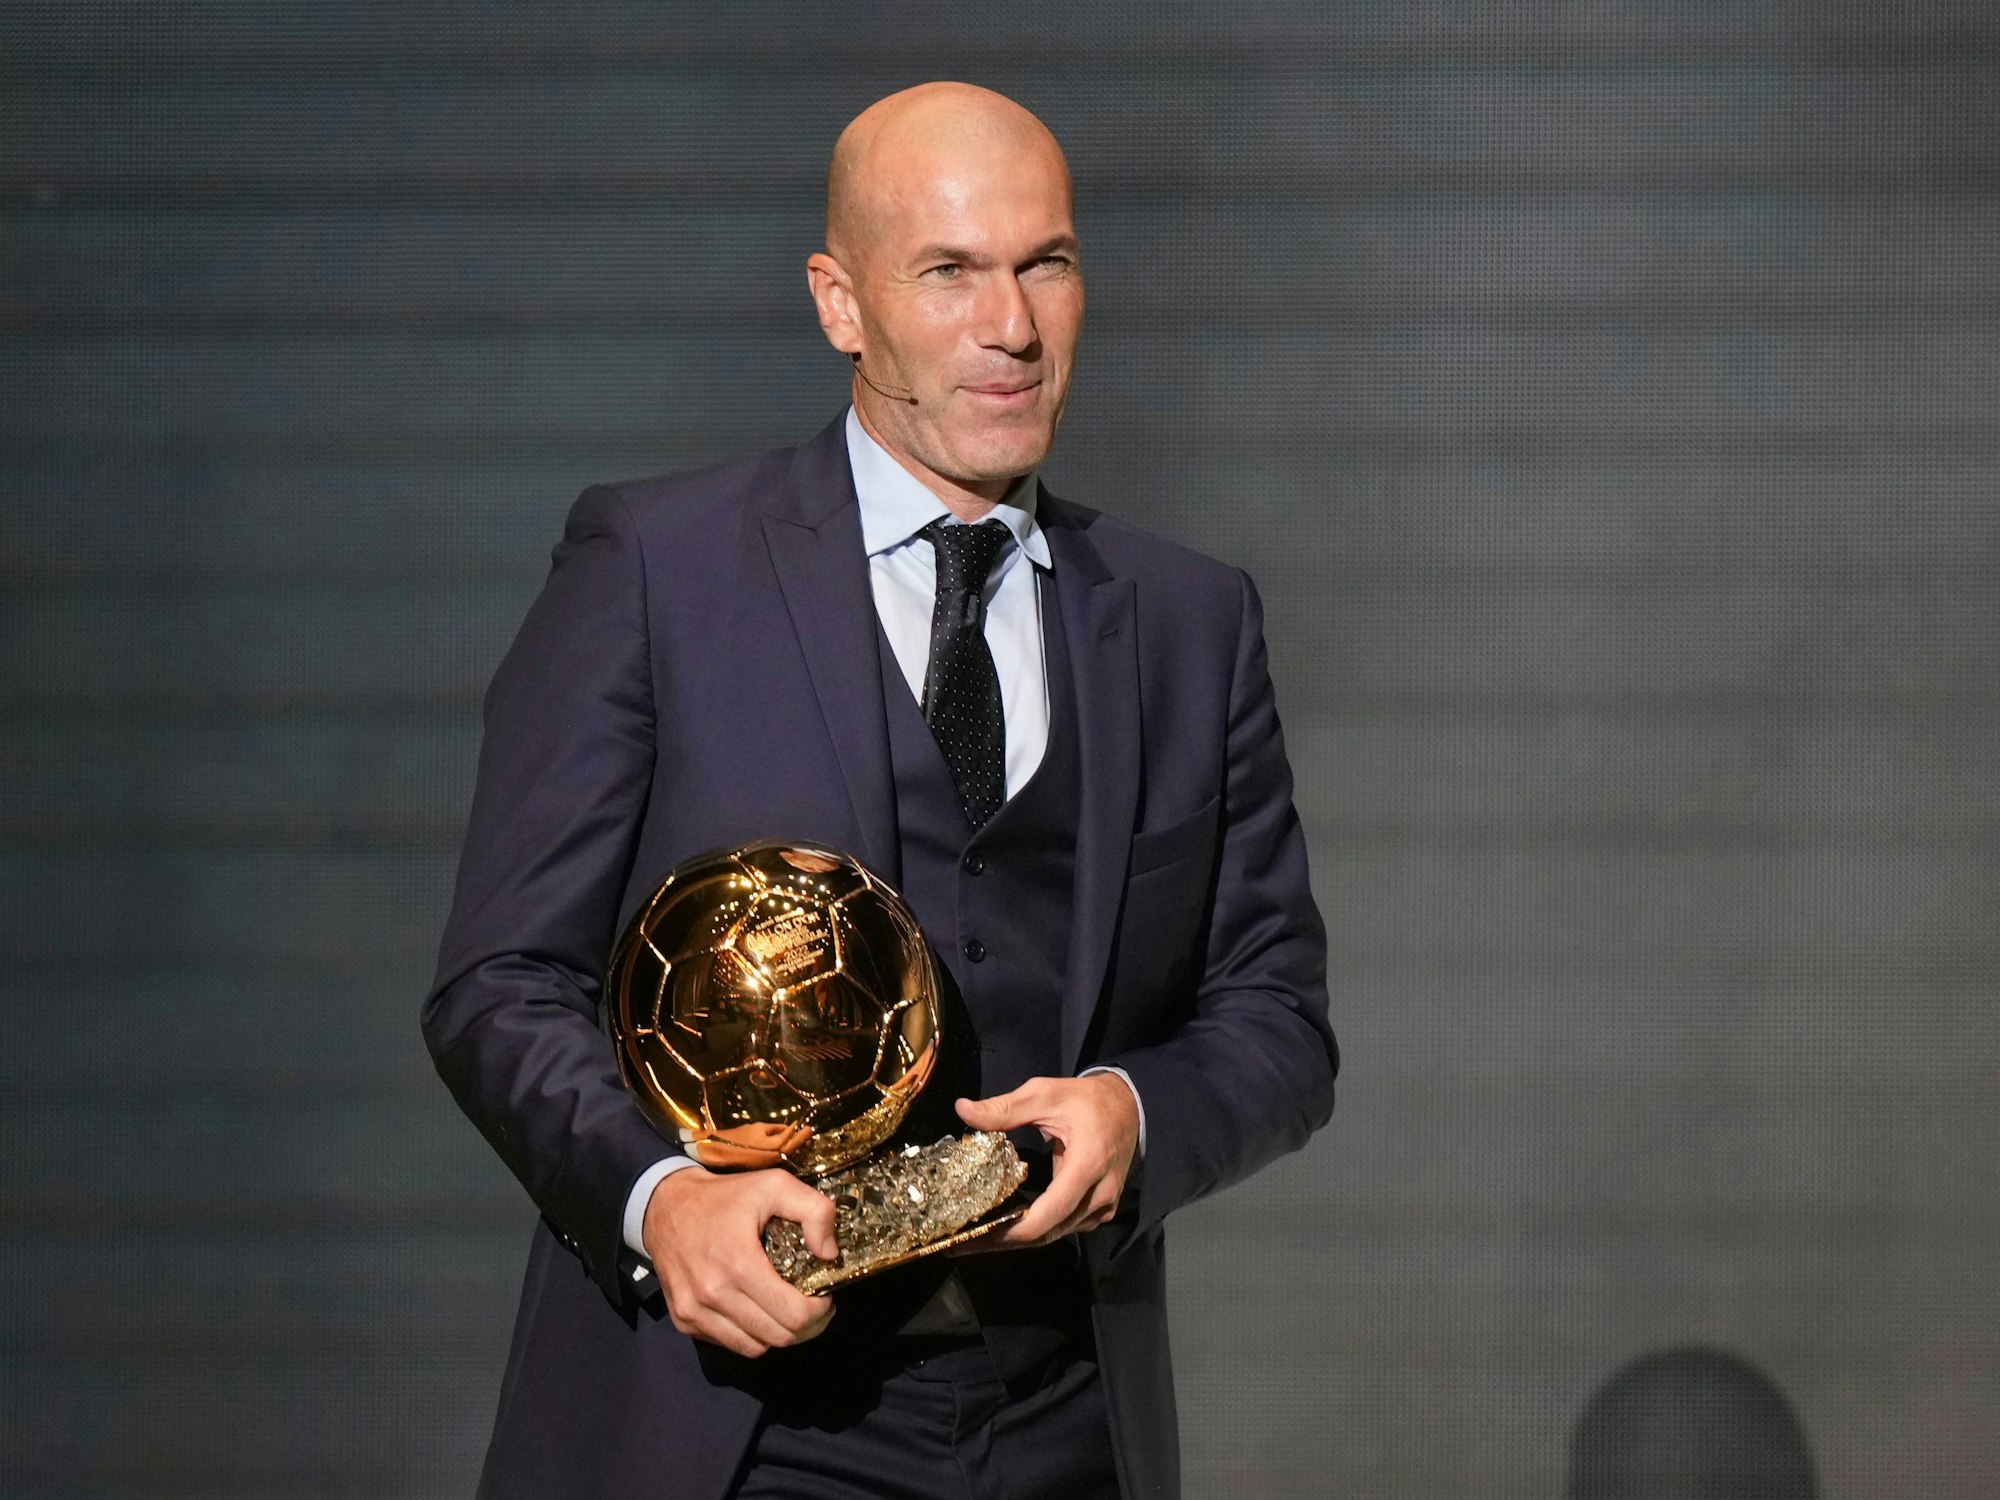 Zinedine Zidane, ehemaliger Fußballspieler und Manager aus Frankreich, präsentiert die Ballon d'Or-Trophäe während der 66. Verleihung des Ballon d'Or.